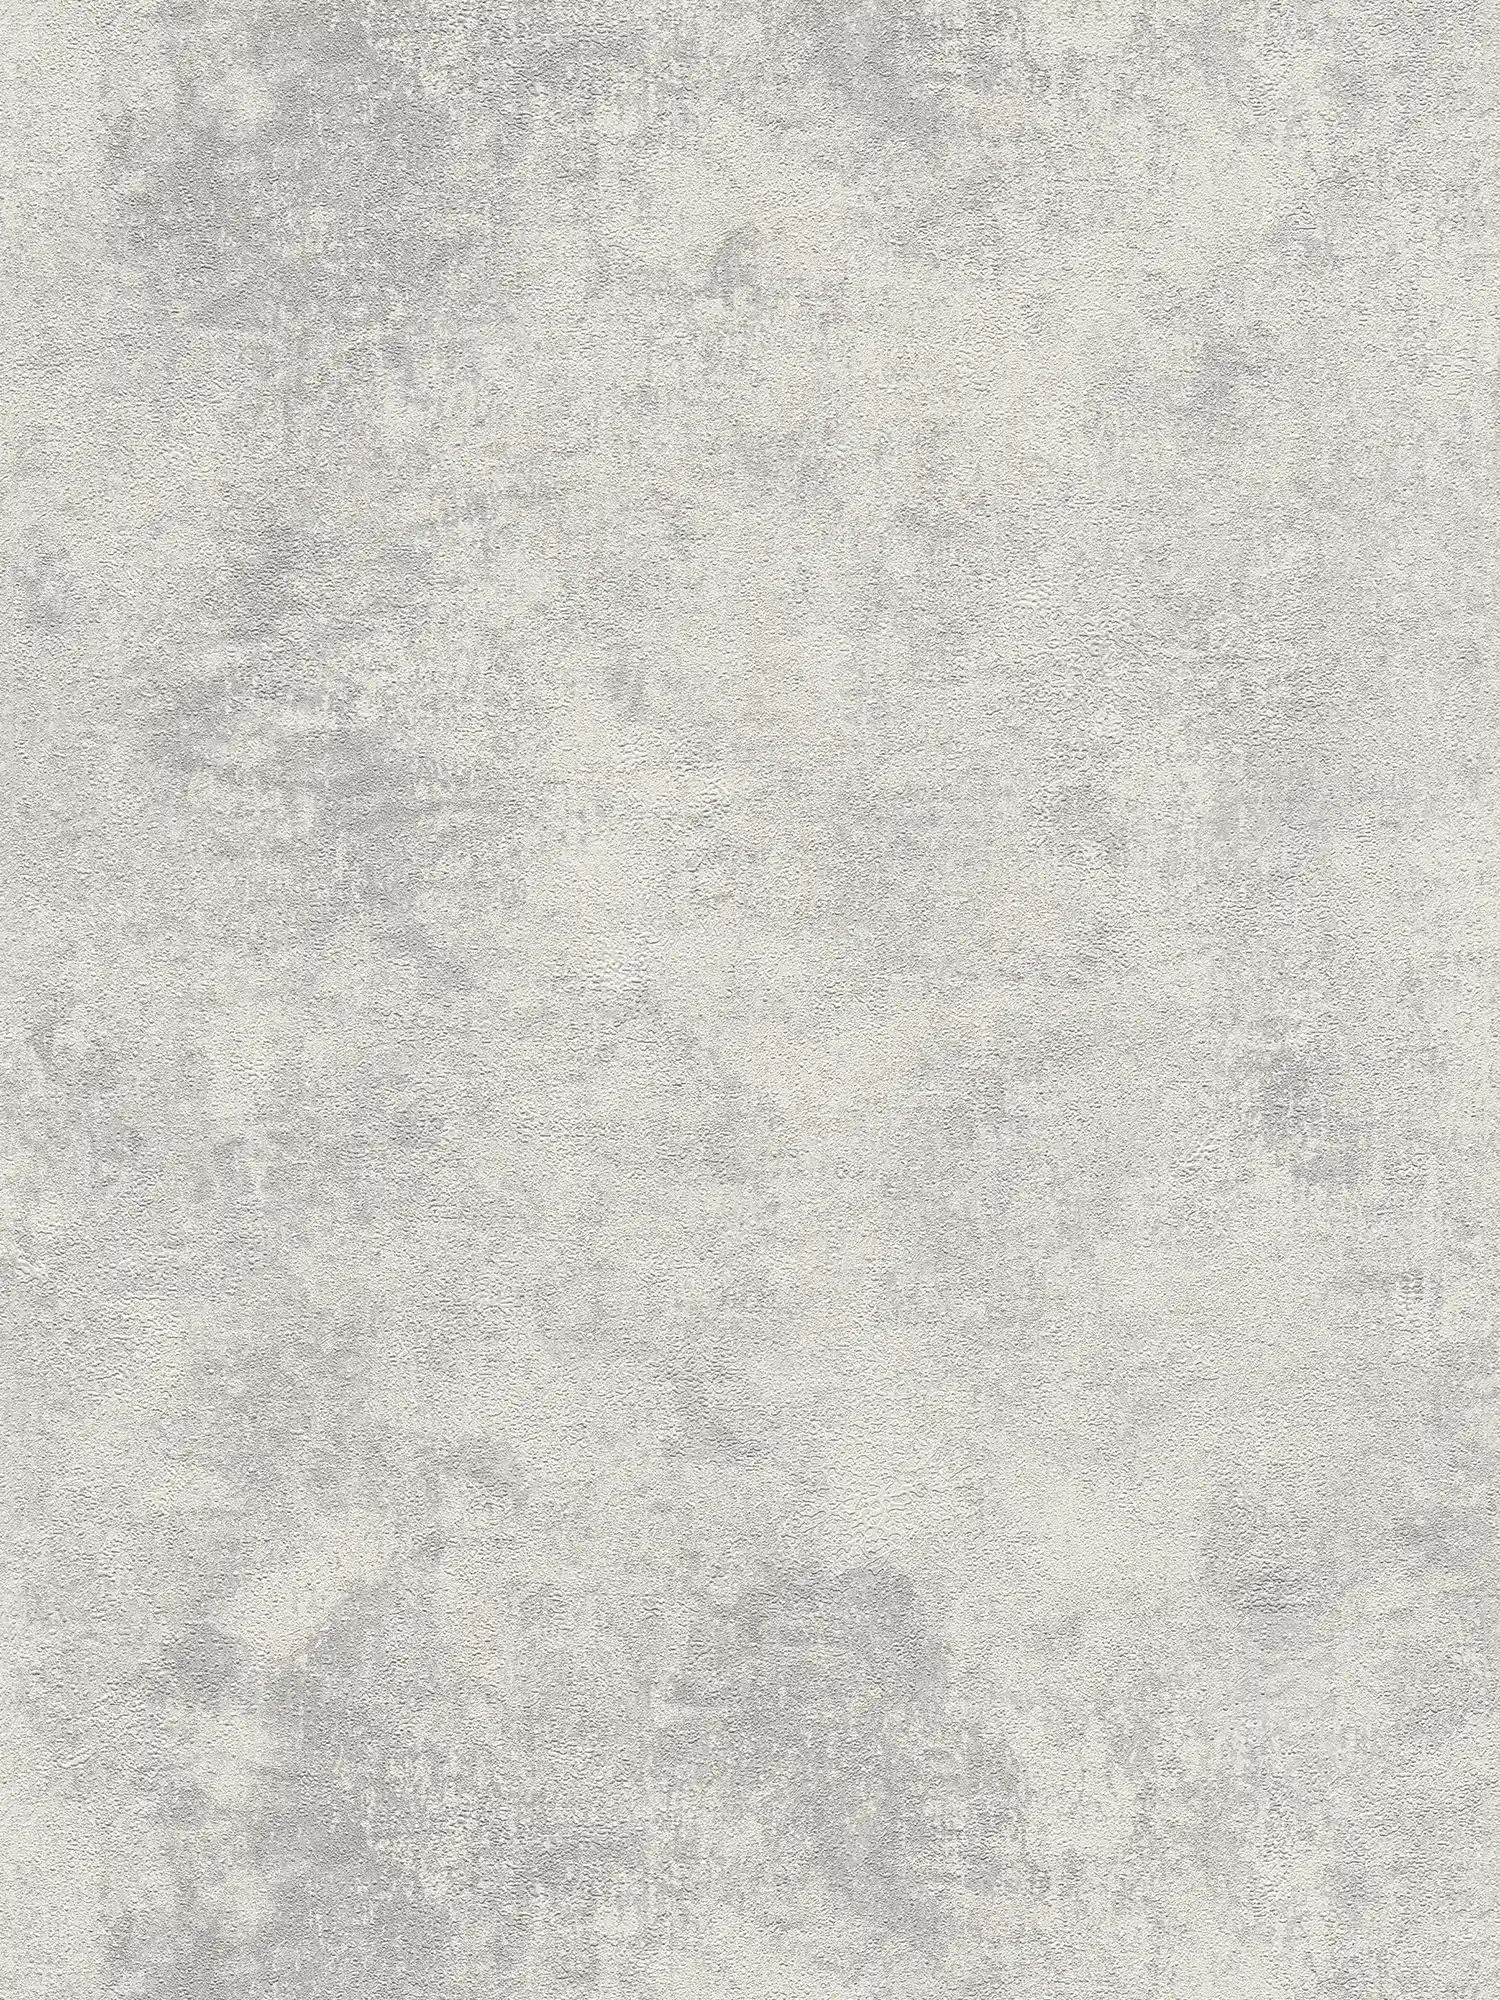 Vliesbehang met schijvengipslook & structuurpatroon - grijs, zilver
